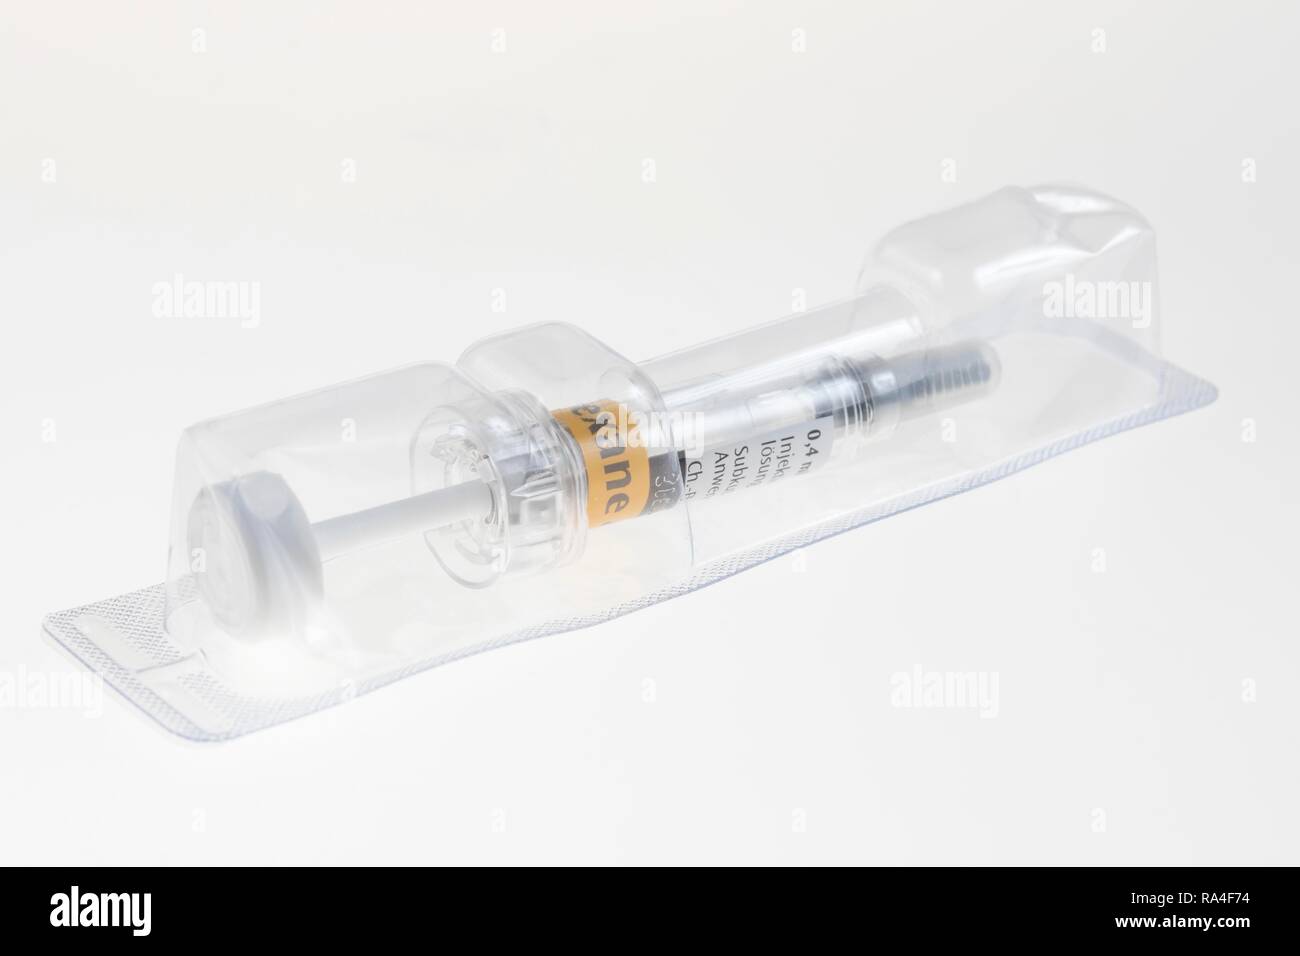 Das verfügbare medizinische Geräte, die Spritze, die steril verpackt, mit Wirkstoff, Impfstoffe, Medikamente Stockfoto